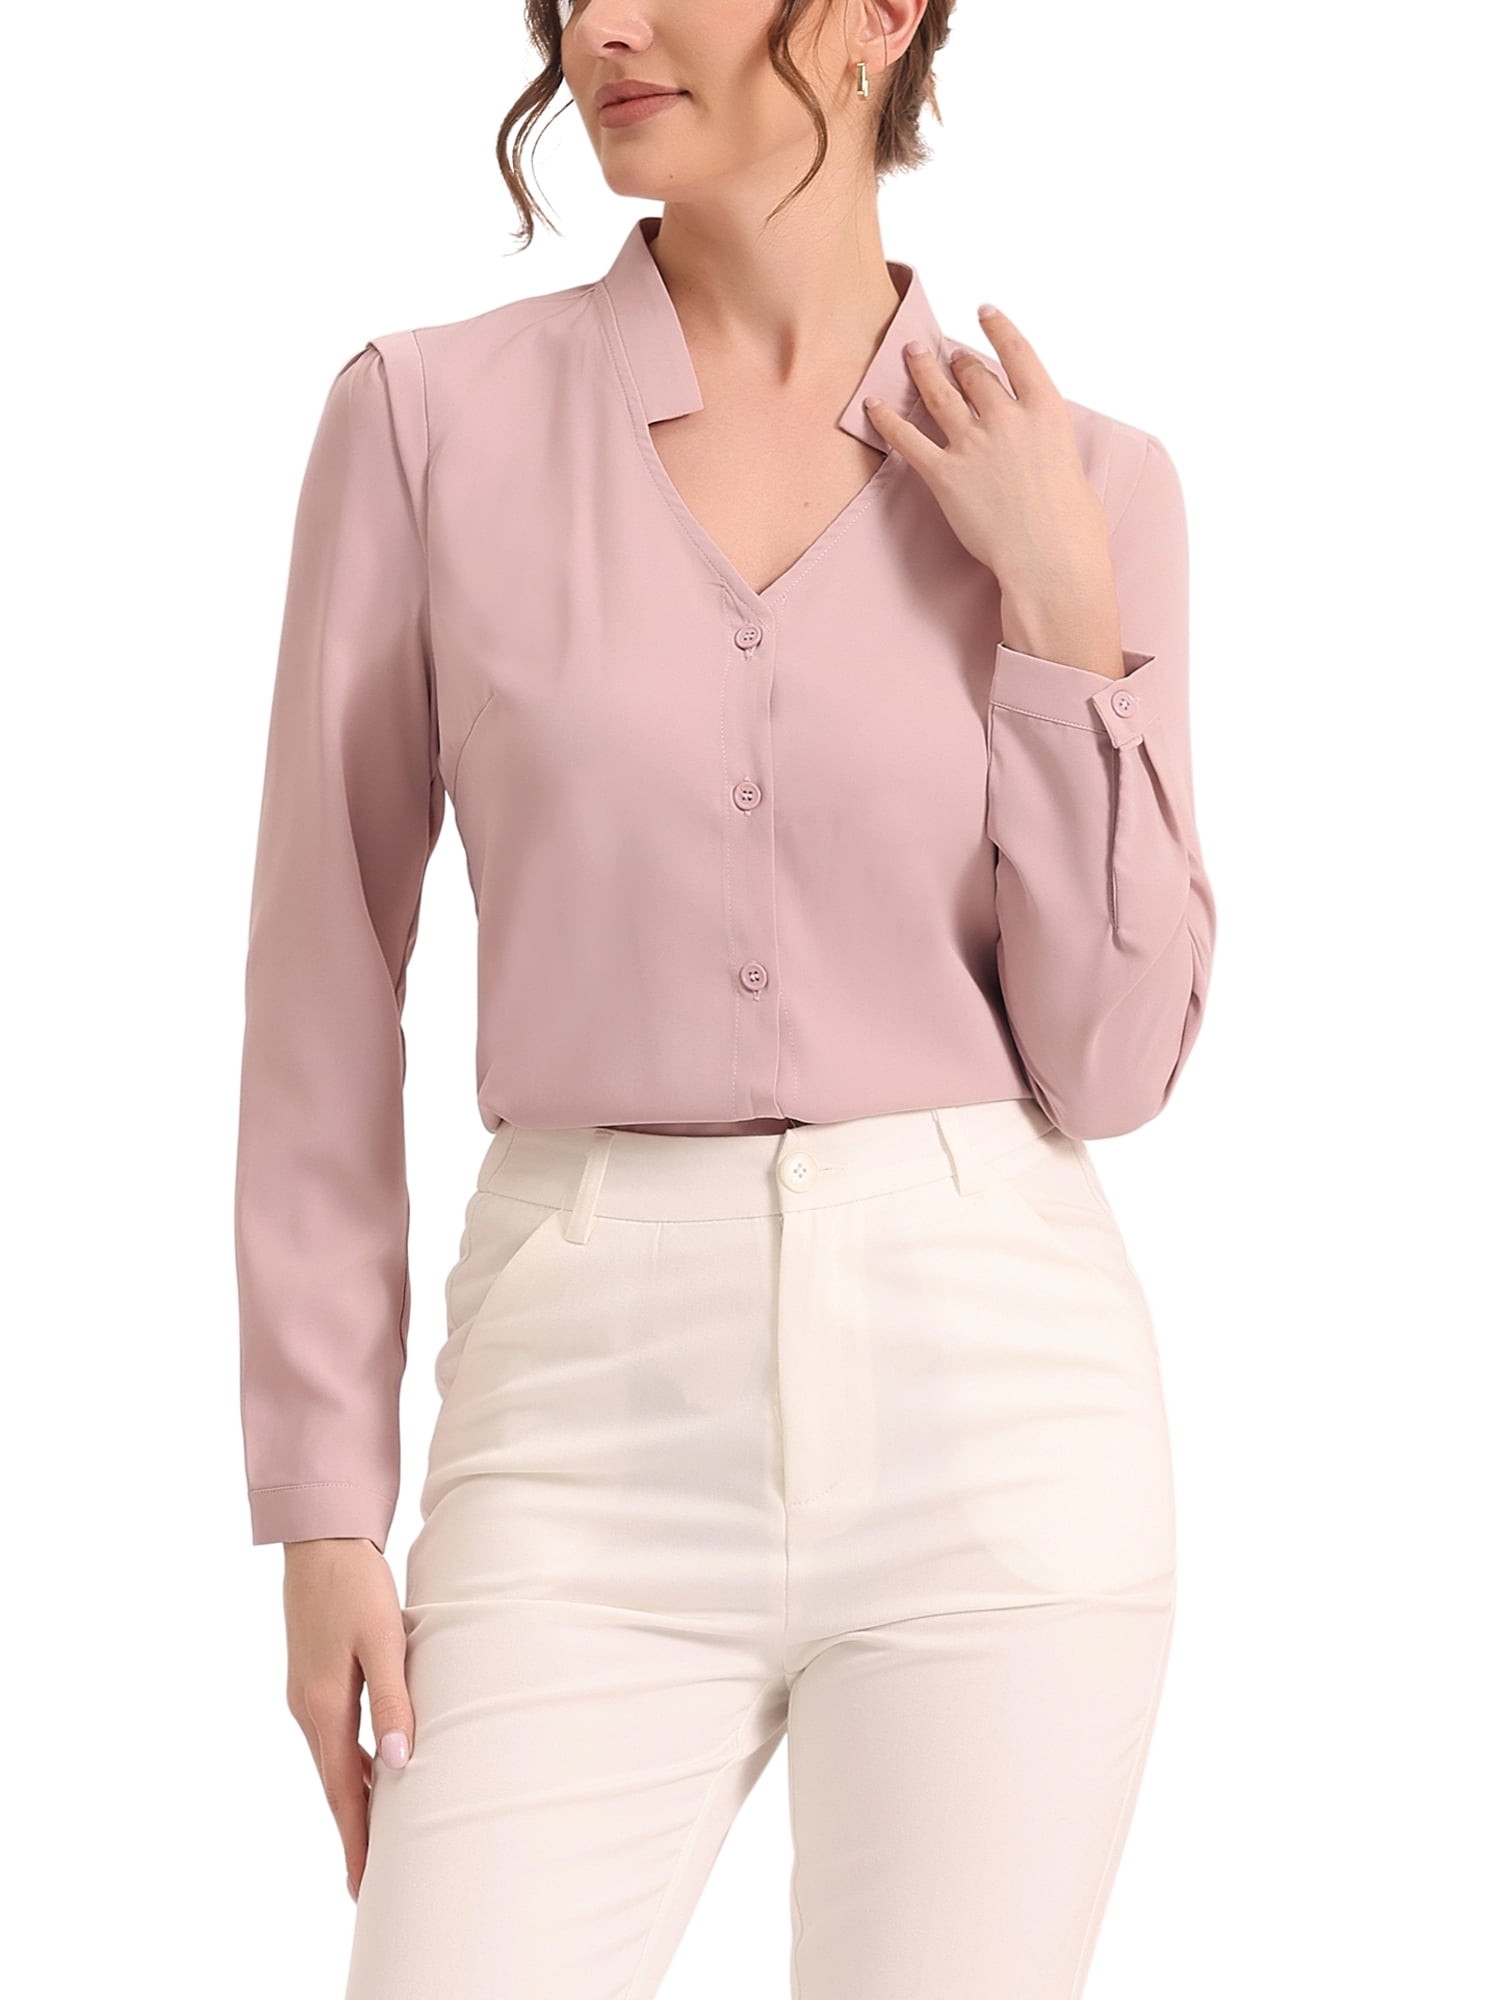 Unique Bargains Women's Elegant V Neck Long Sleeves Button Down Shirt